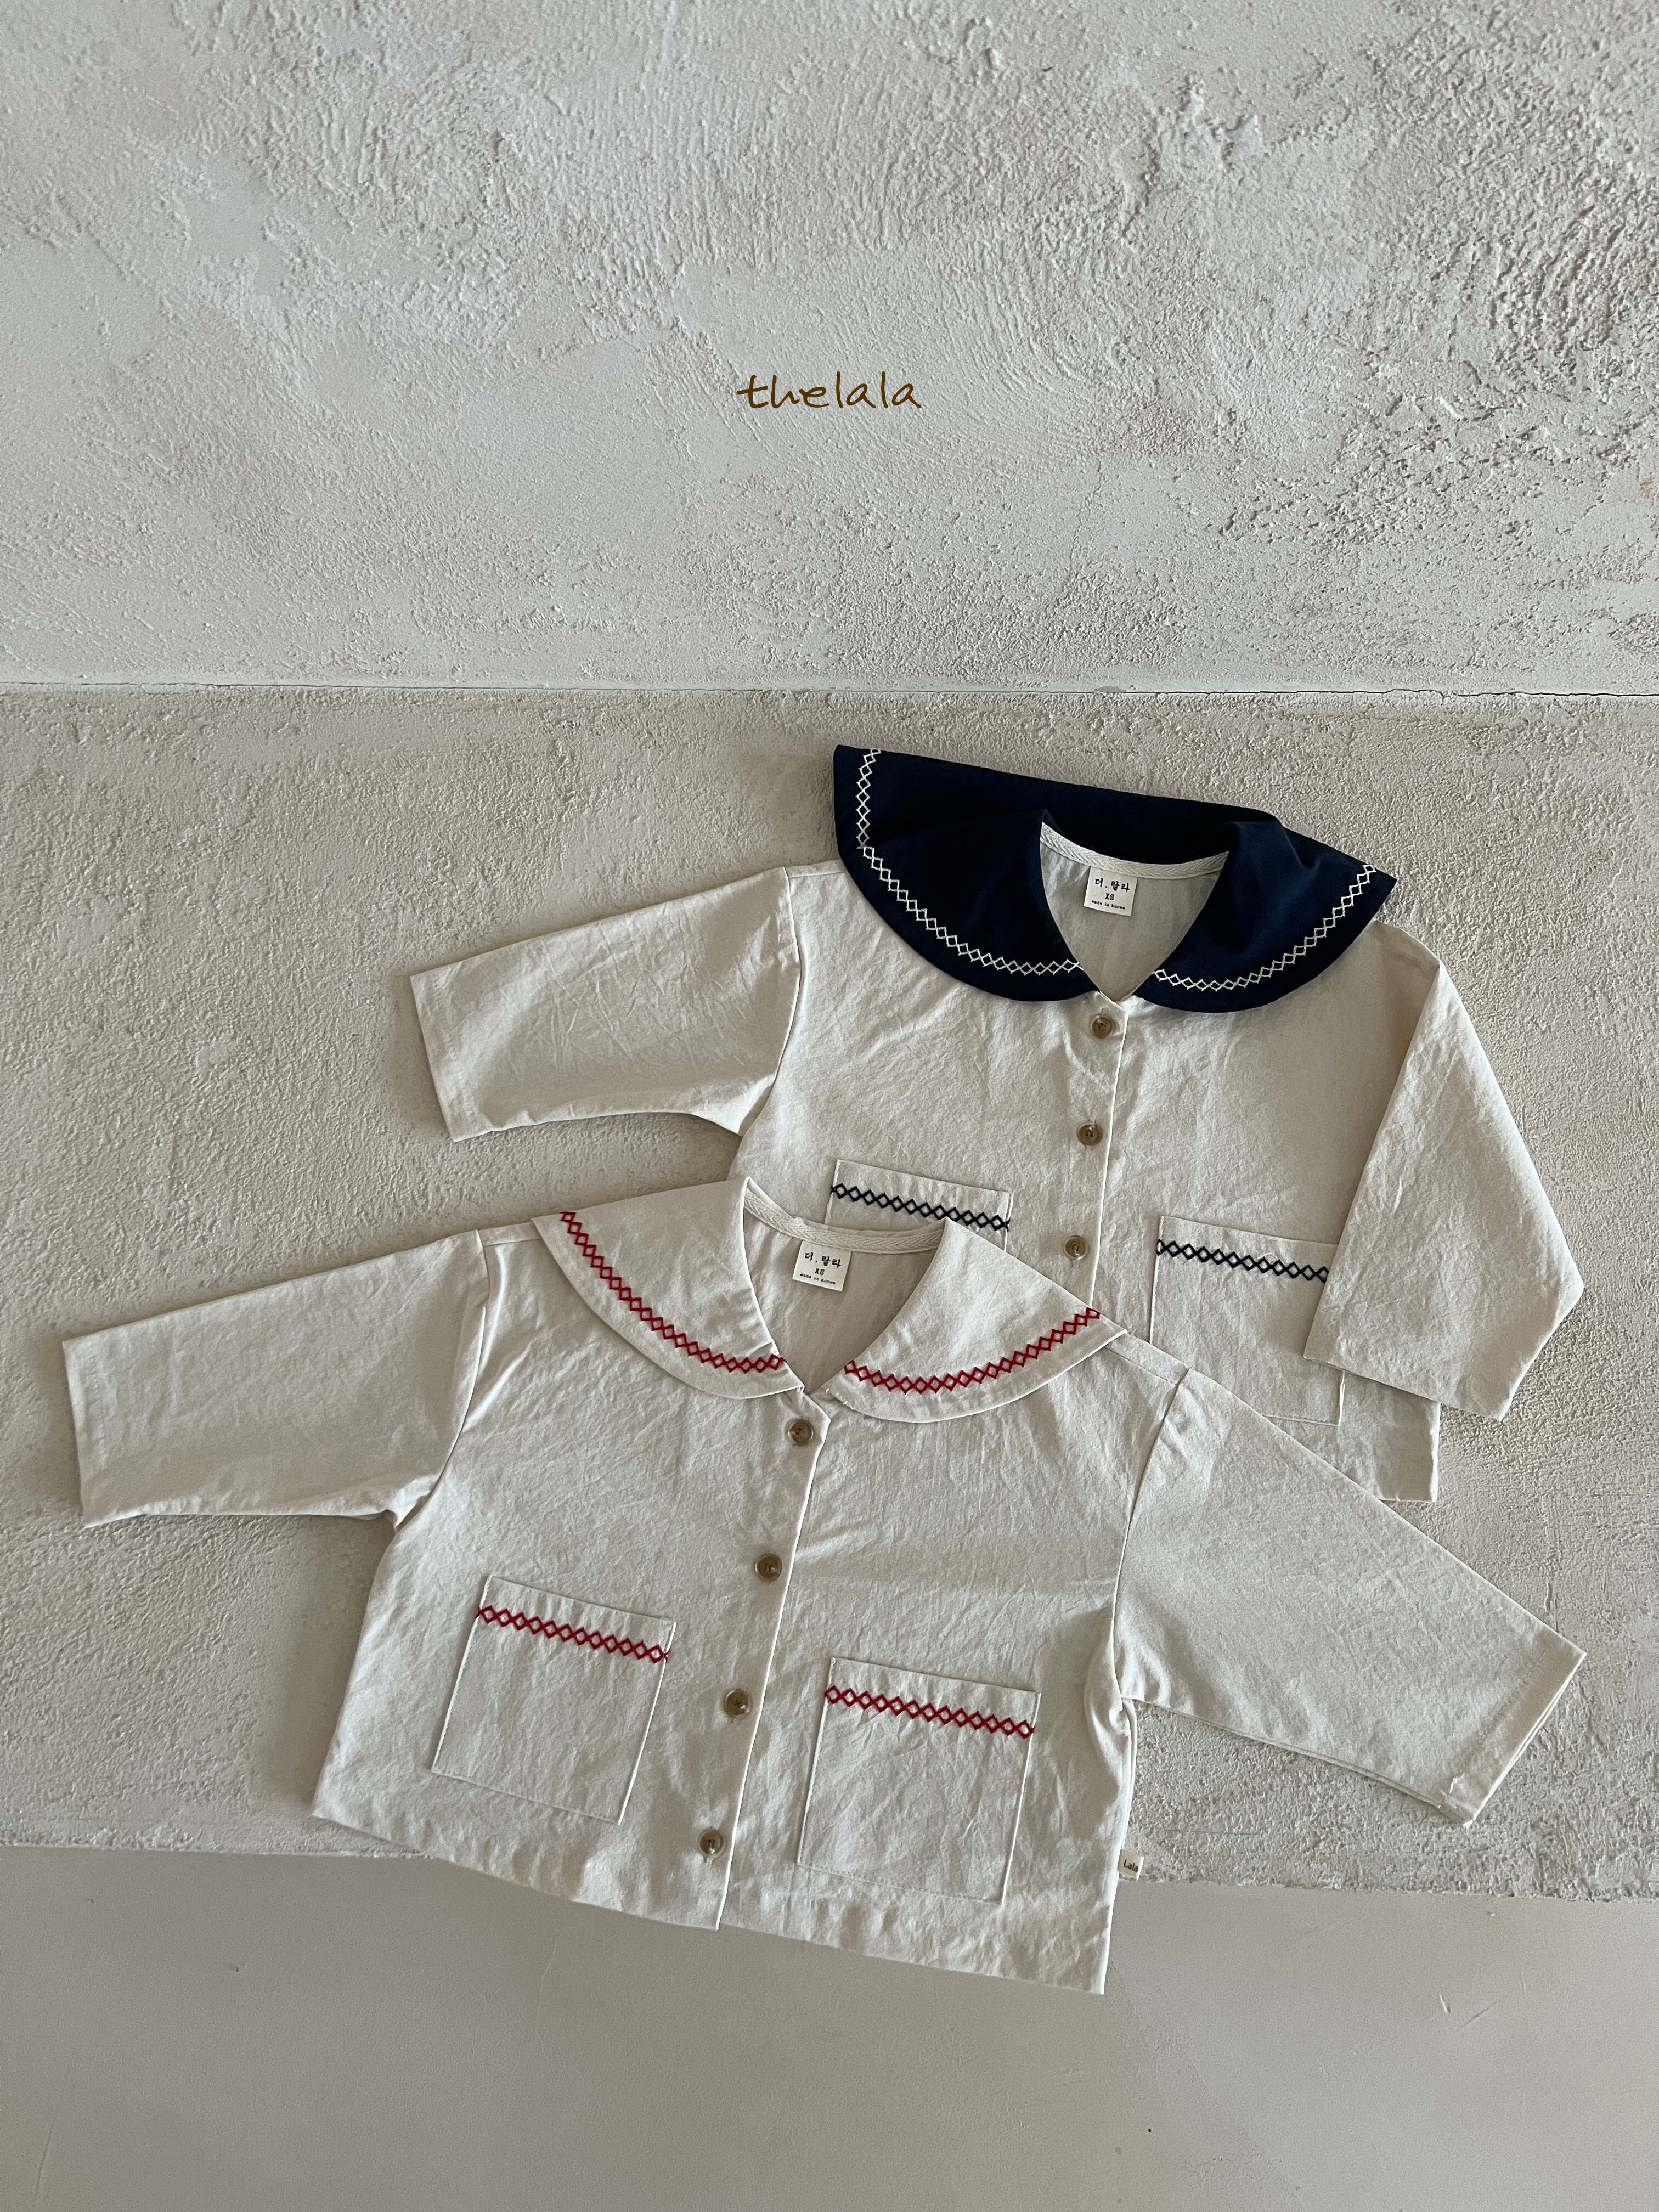 marine jacket【la】※予約商品